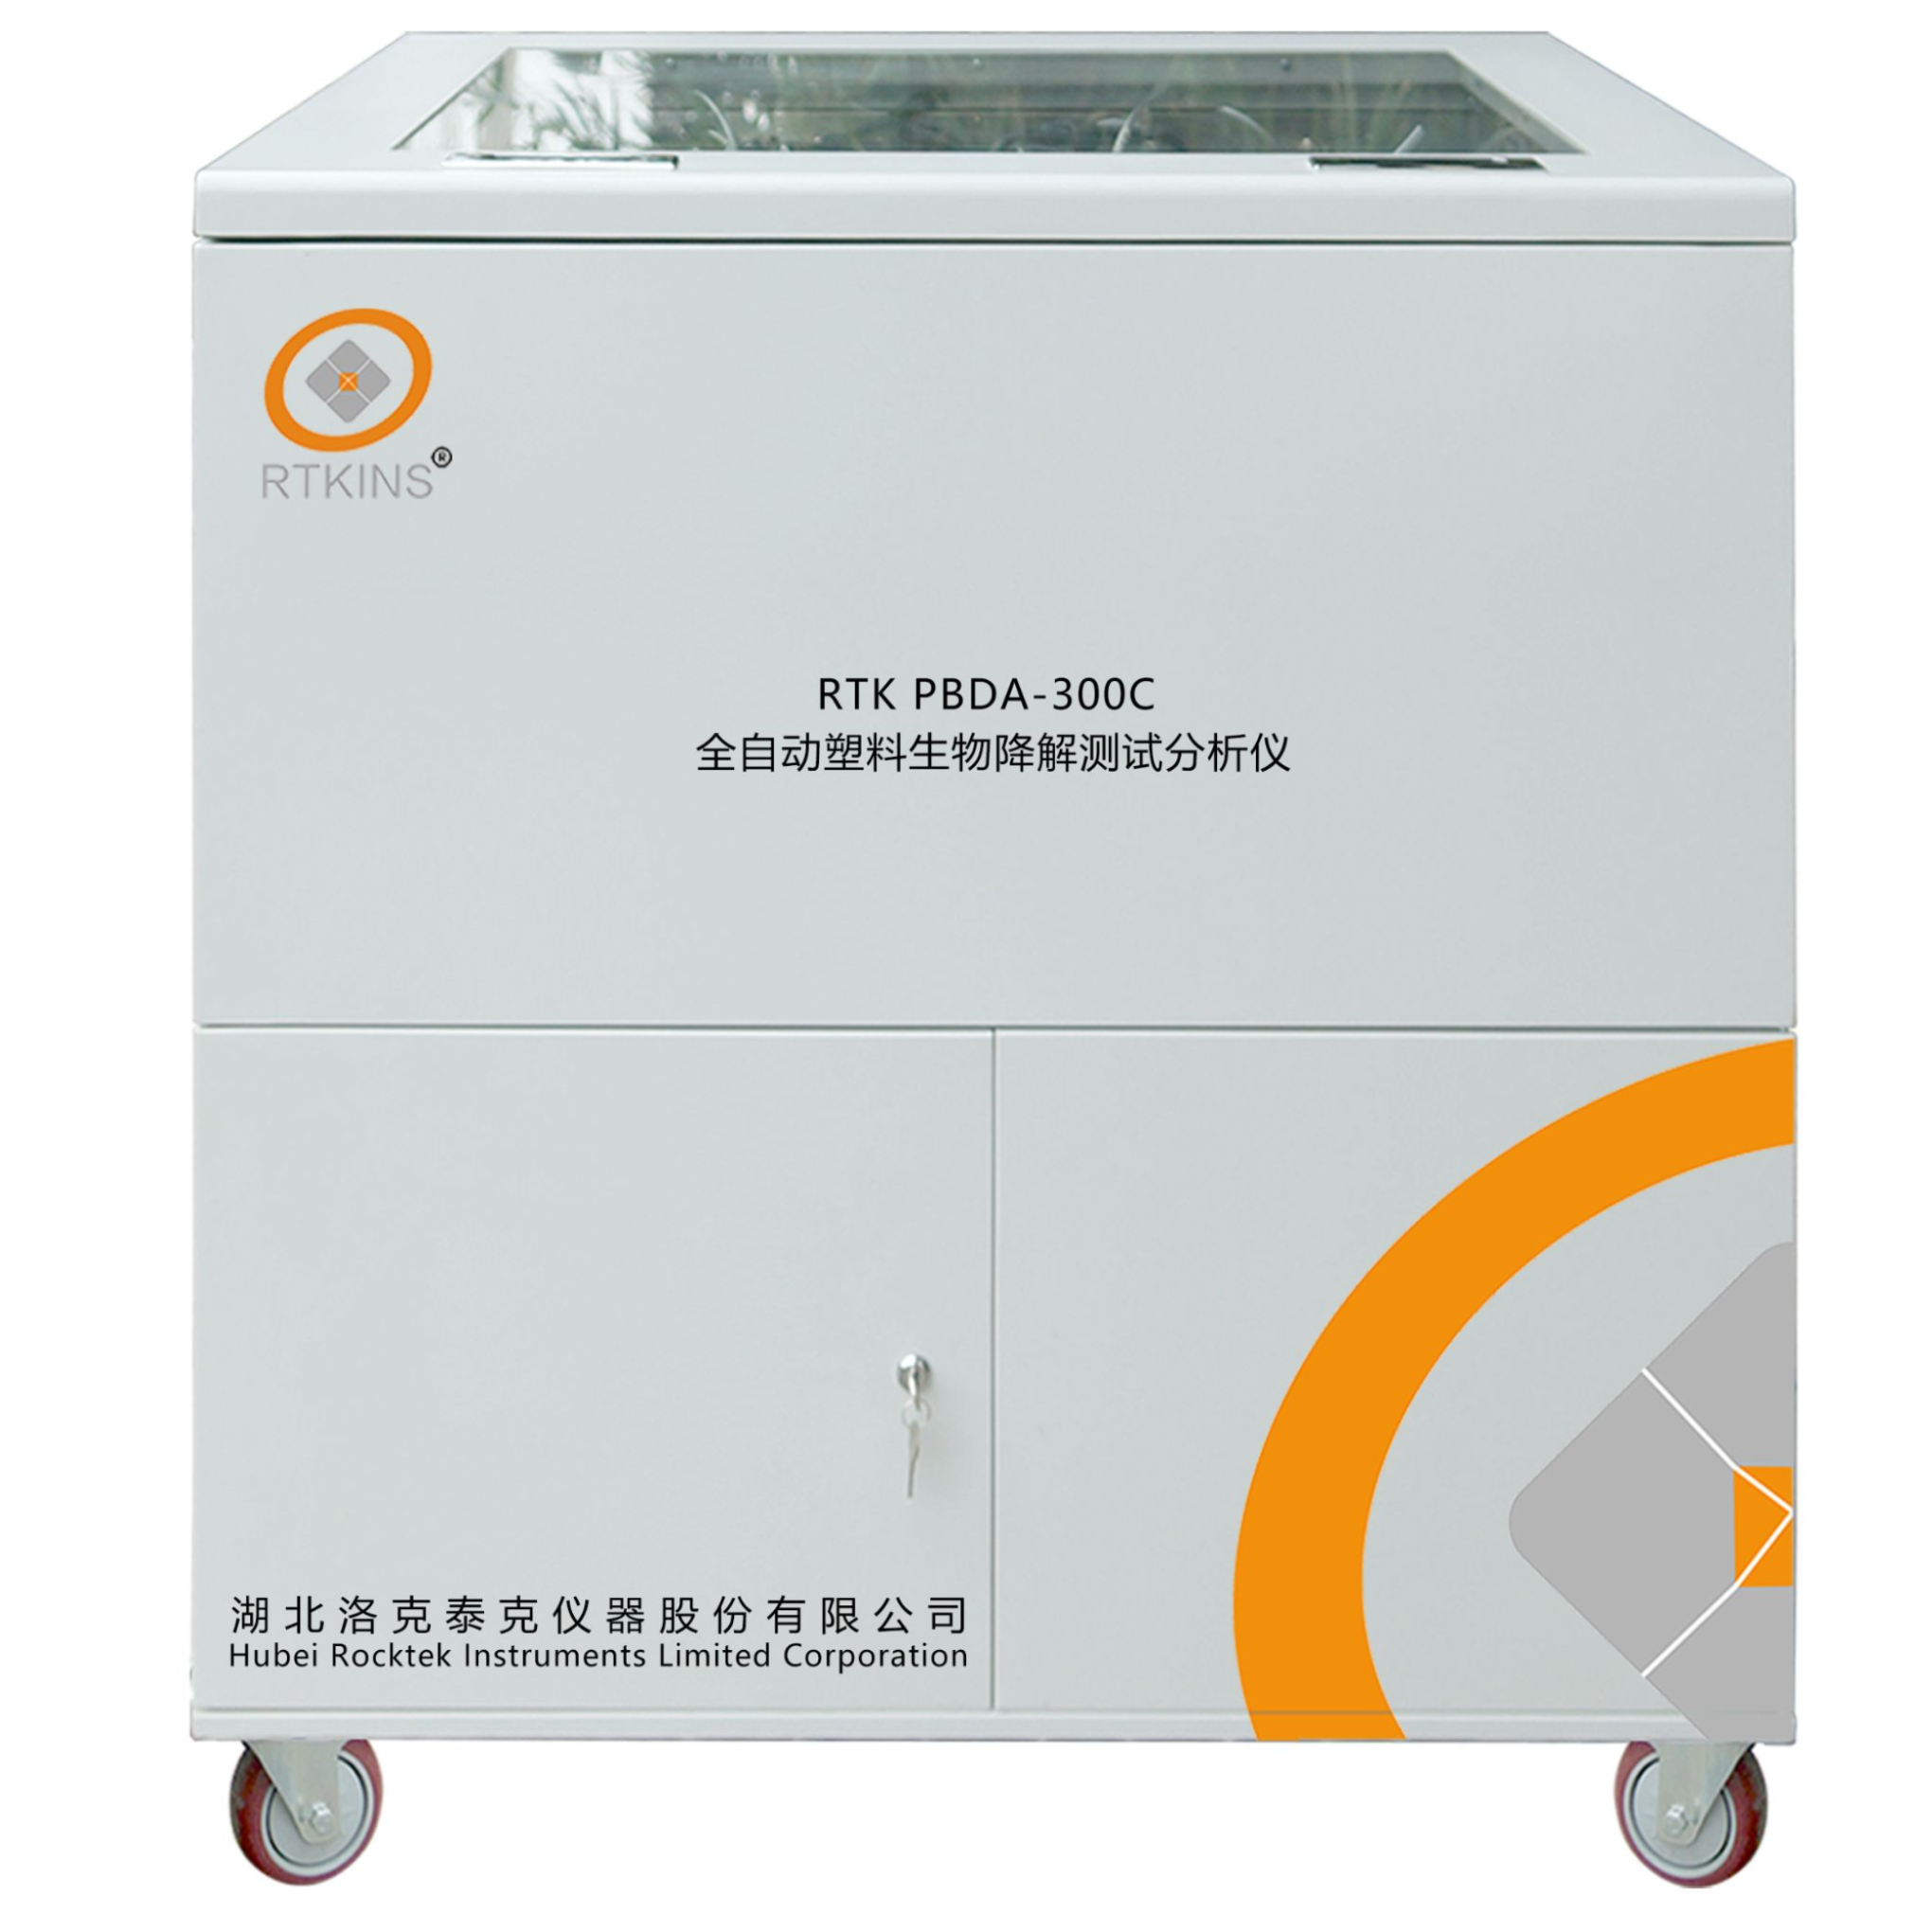 RTK PBDA-300C 全⾃动塑料⽣物降解测试分析仪